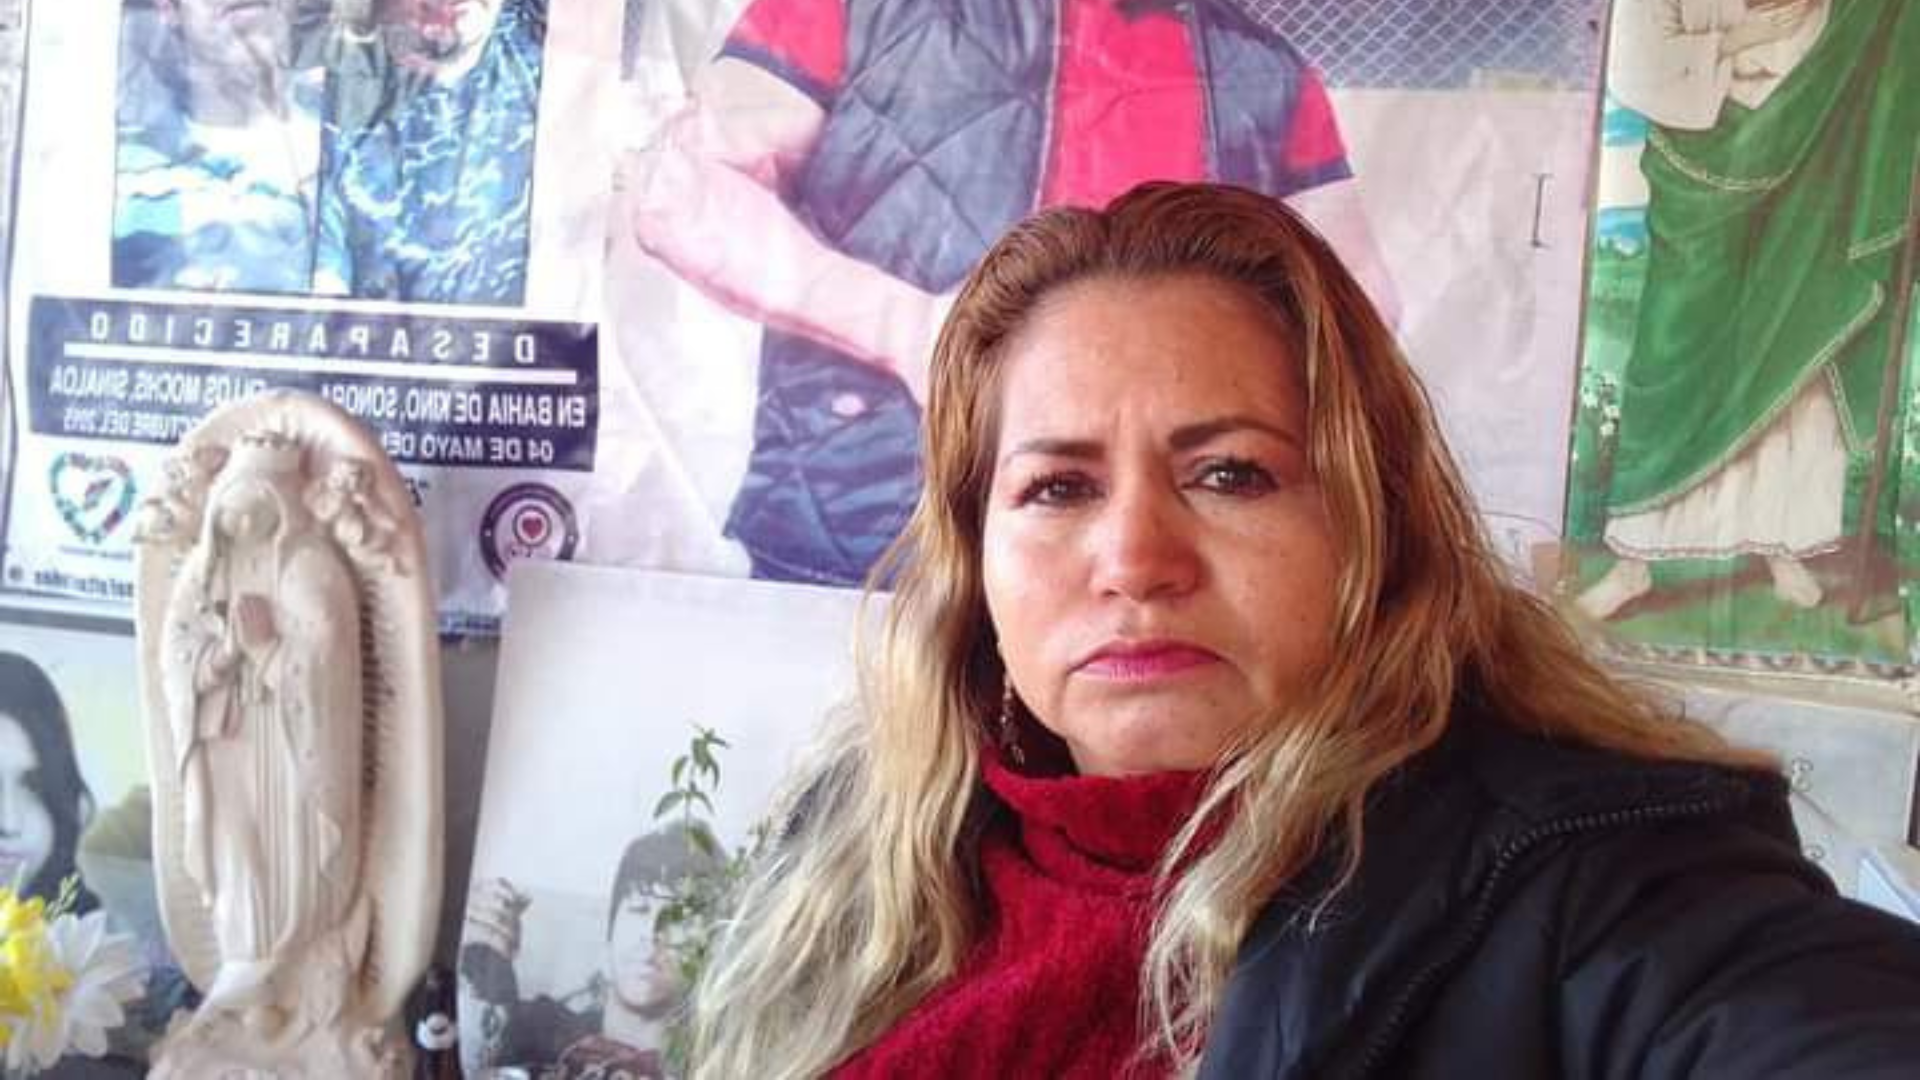 Ceci Flores, madre buscadora, denunció ser víctima de tortura psicológica: “Tengo miedo de que me quiten la vida”